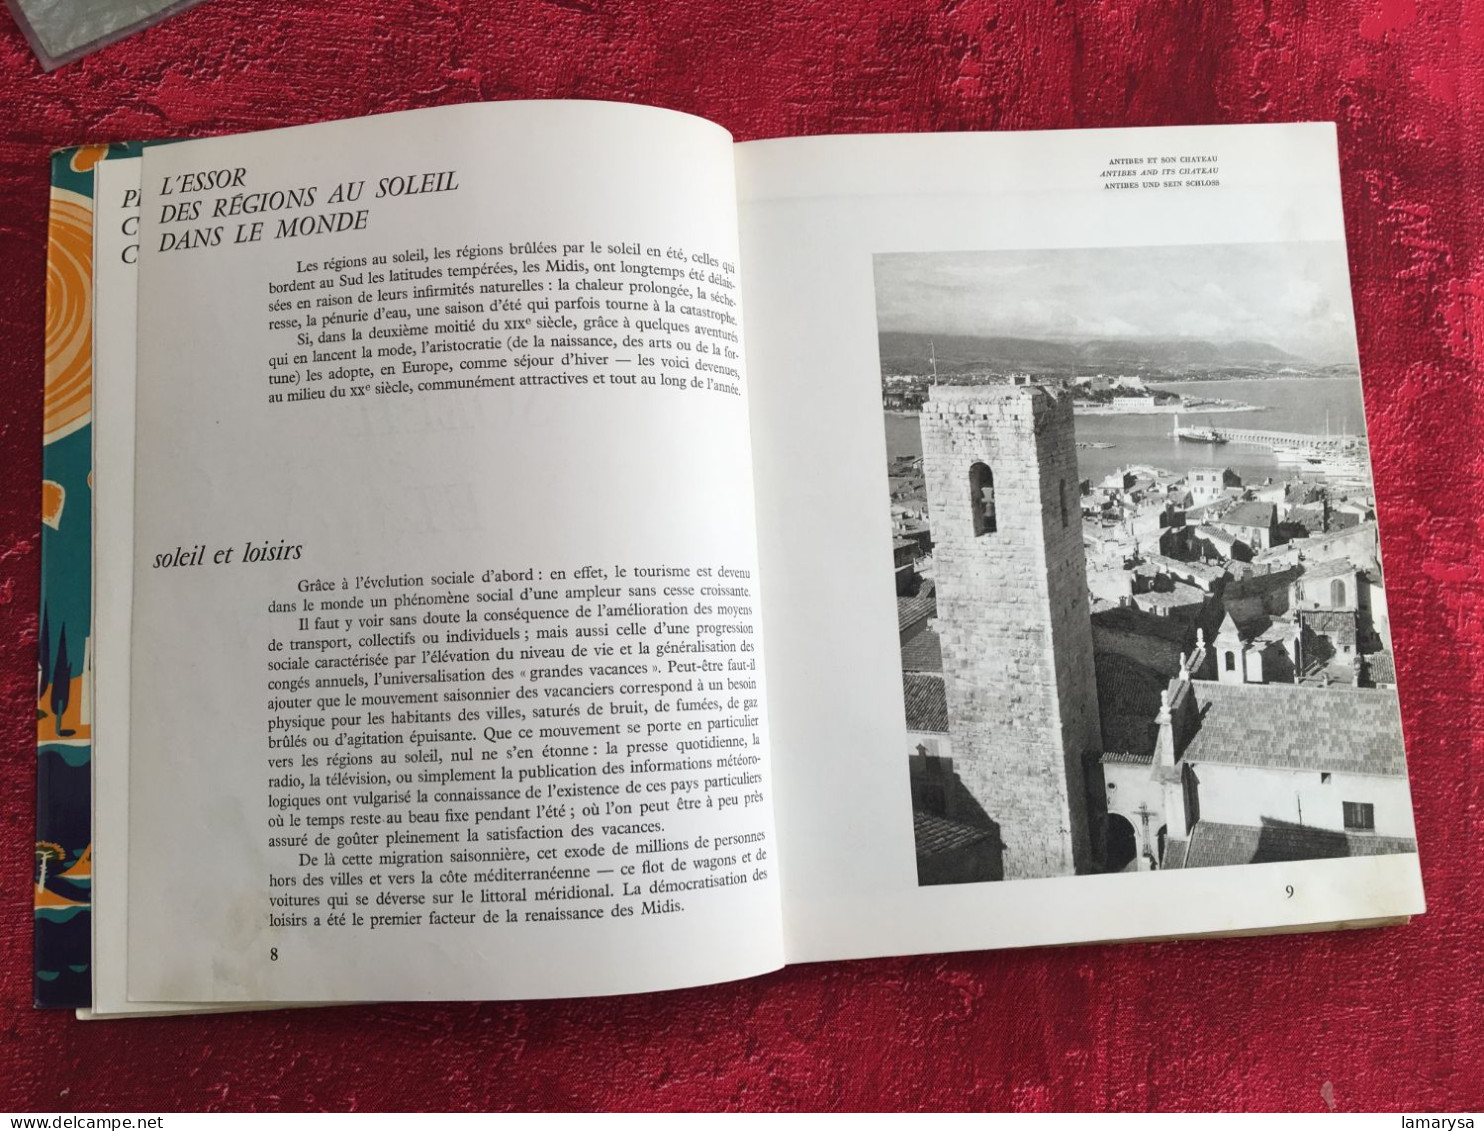 La région du soleil Livre Guide Touristique-Provence-Cote d'azur-Corse-régionalisme-ouvrage edité:comite du tourisme reg